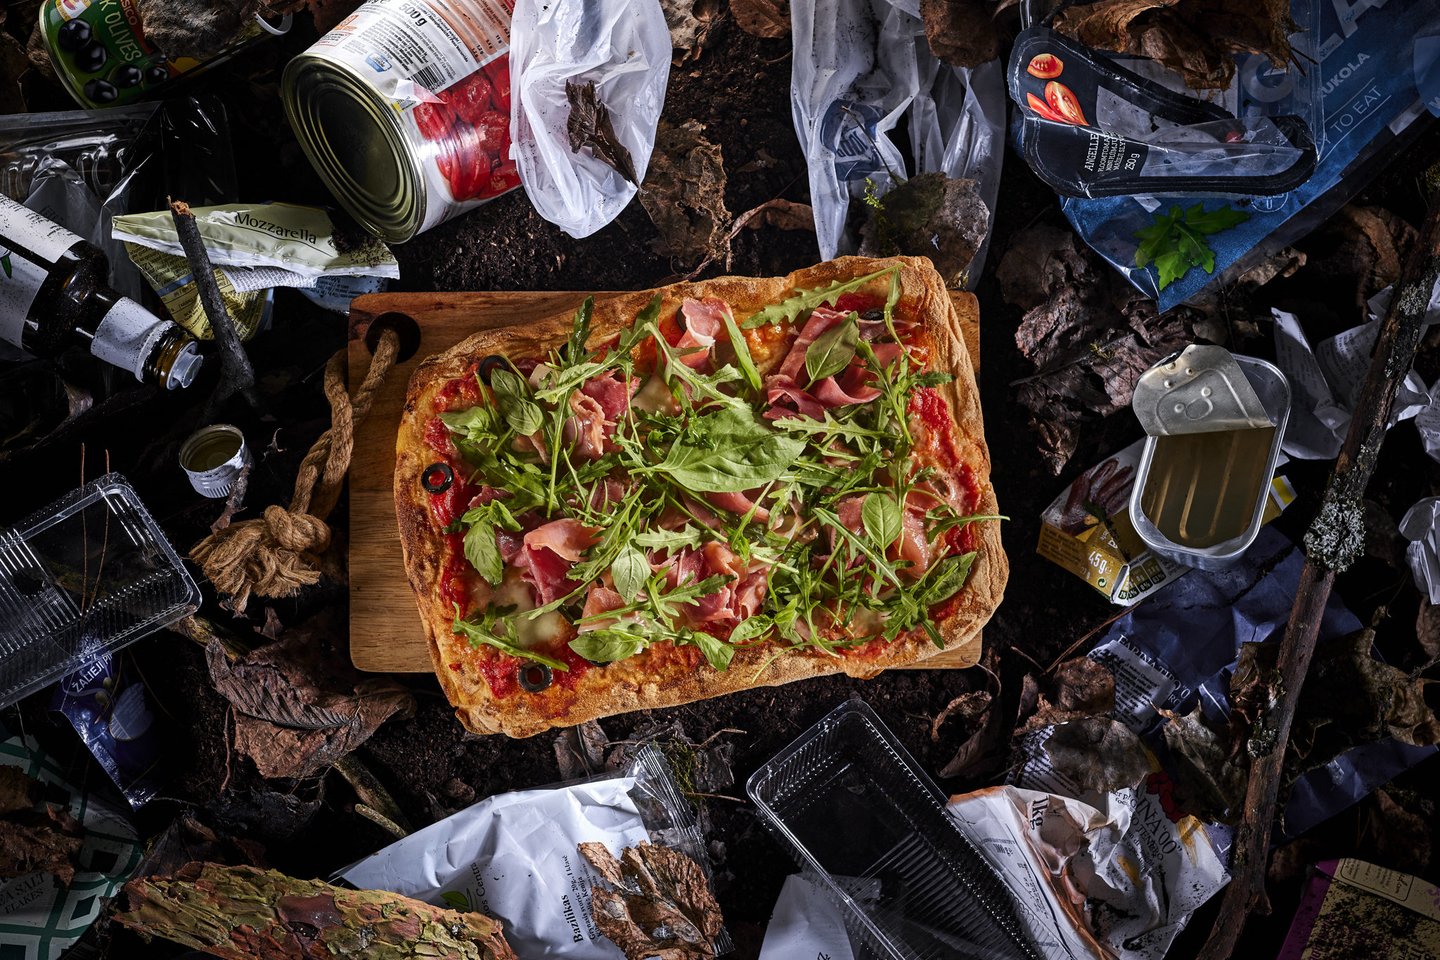 Pristato fotografijų projektą, skirtą atkreipti dėmesį į vienkartinių maisto pakuočių problemą.<br>R.Daskevičiaus nuotr. 